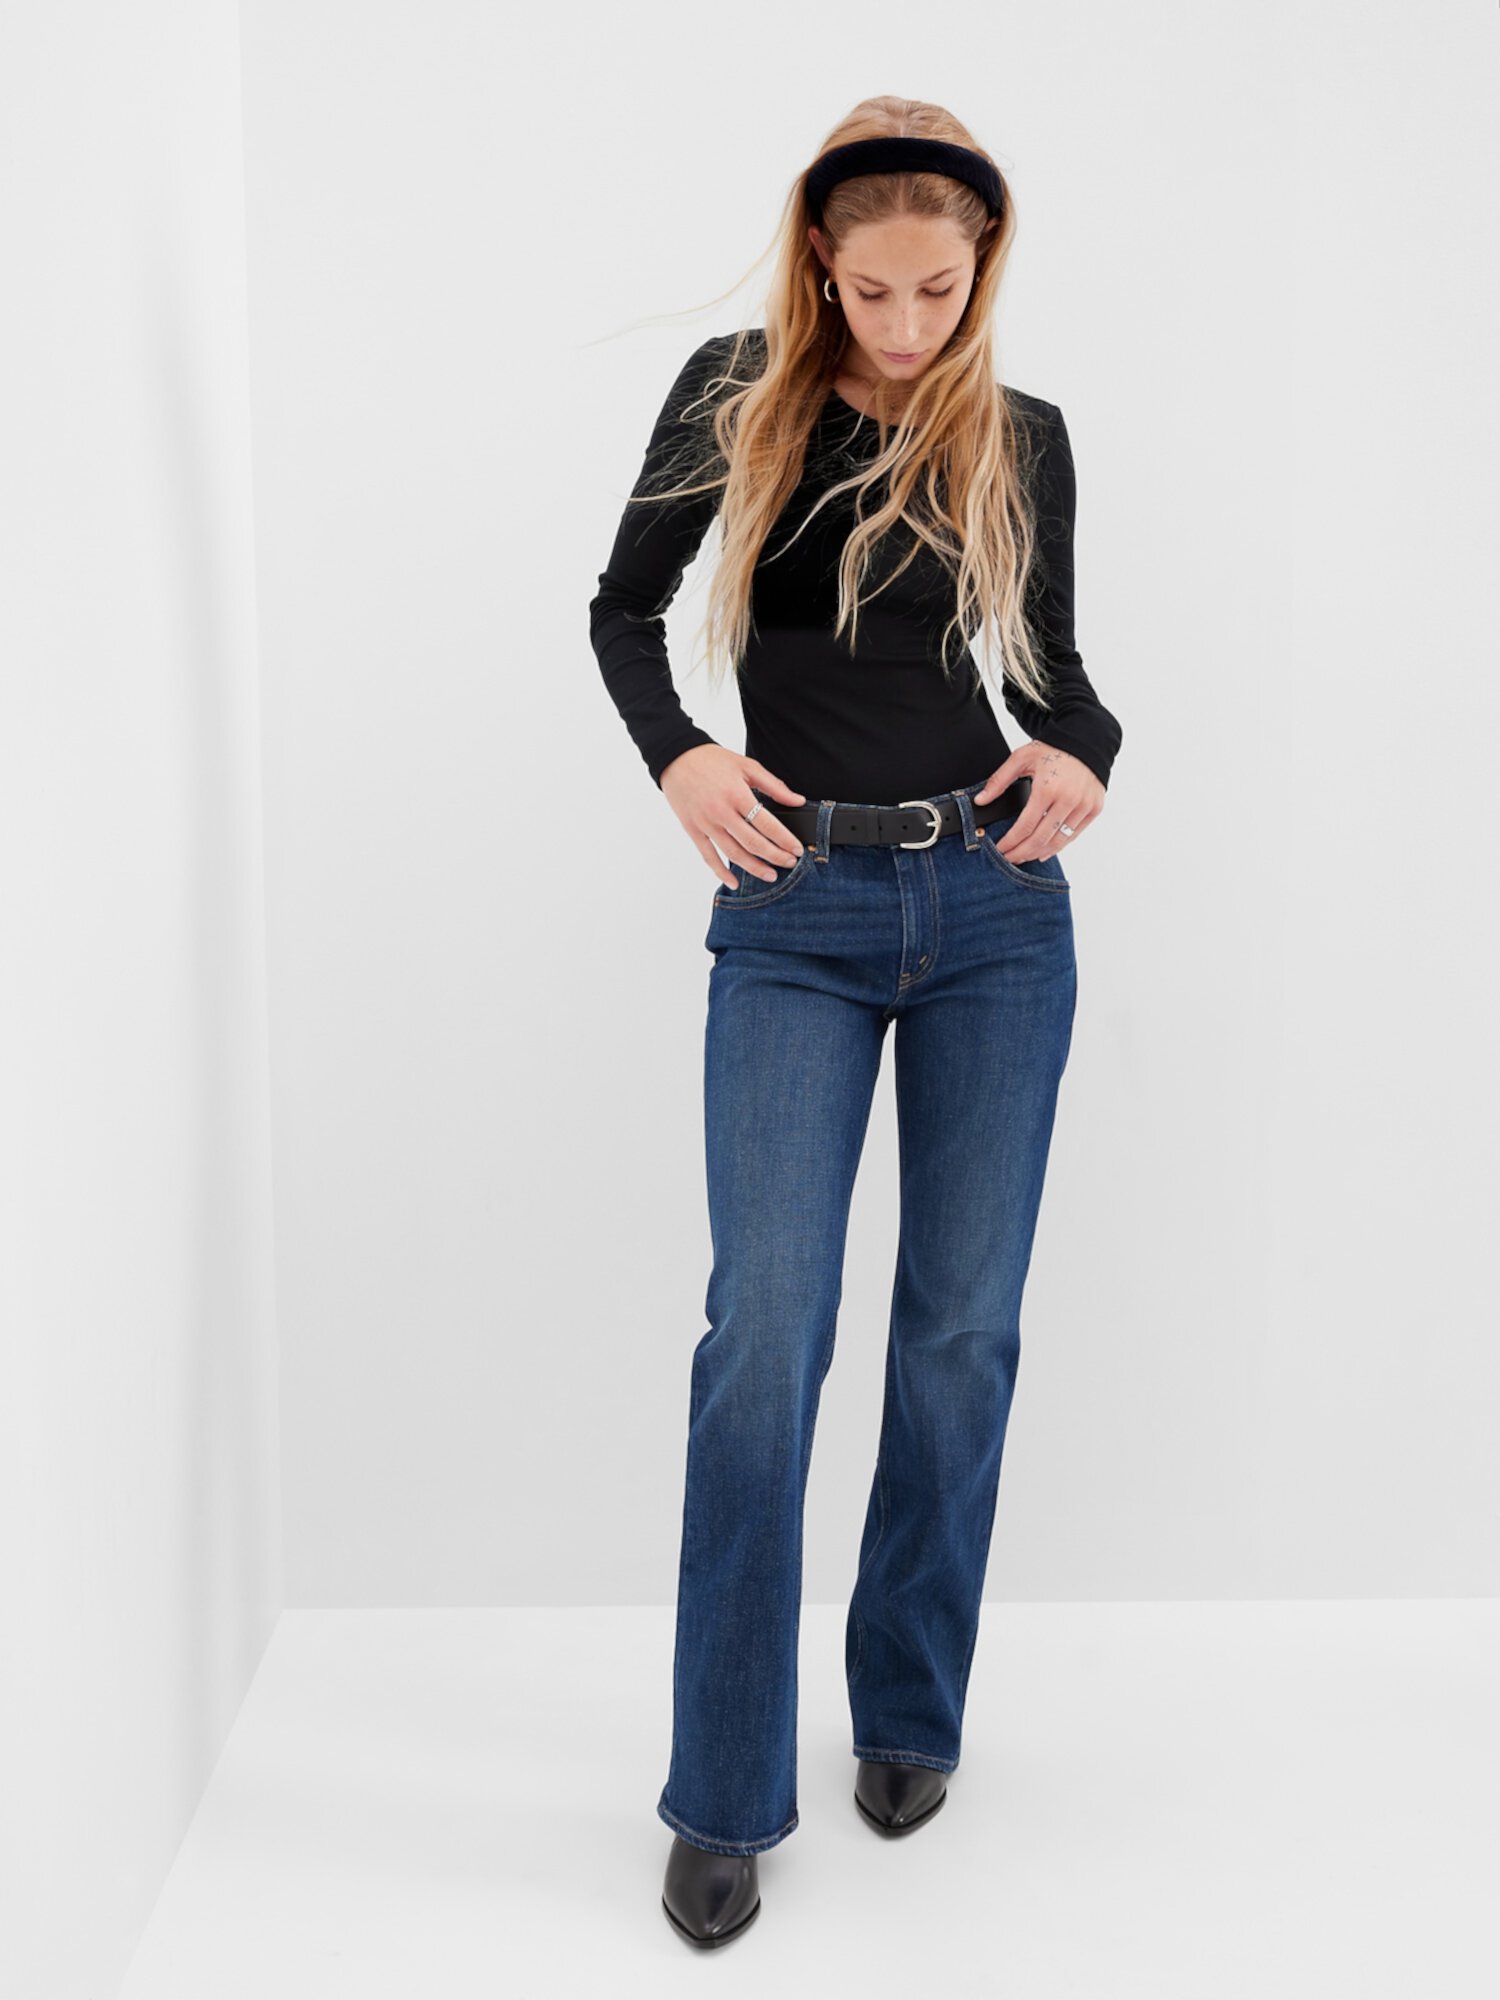 Свободные расклешенные джинсы средней посадки &#x27;90-х с тканью Washwell Gap